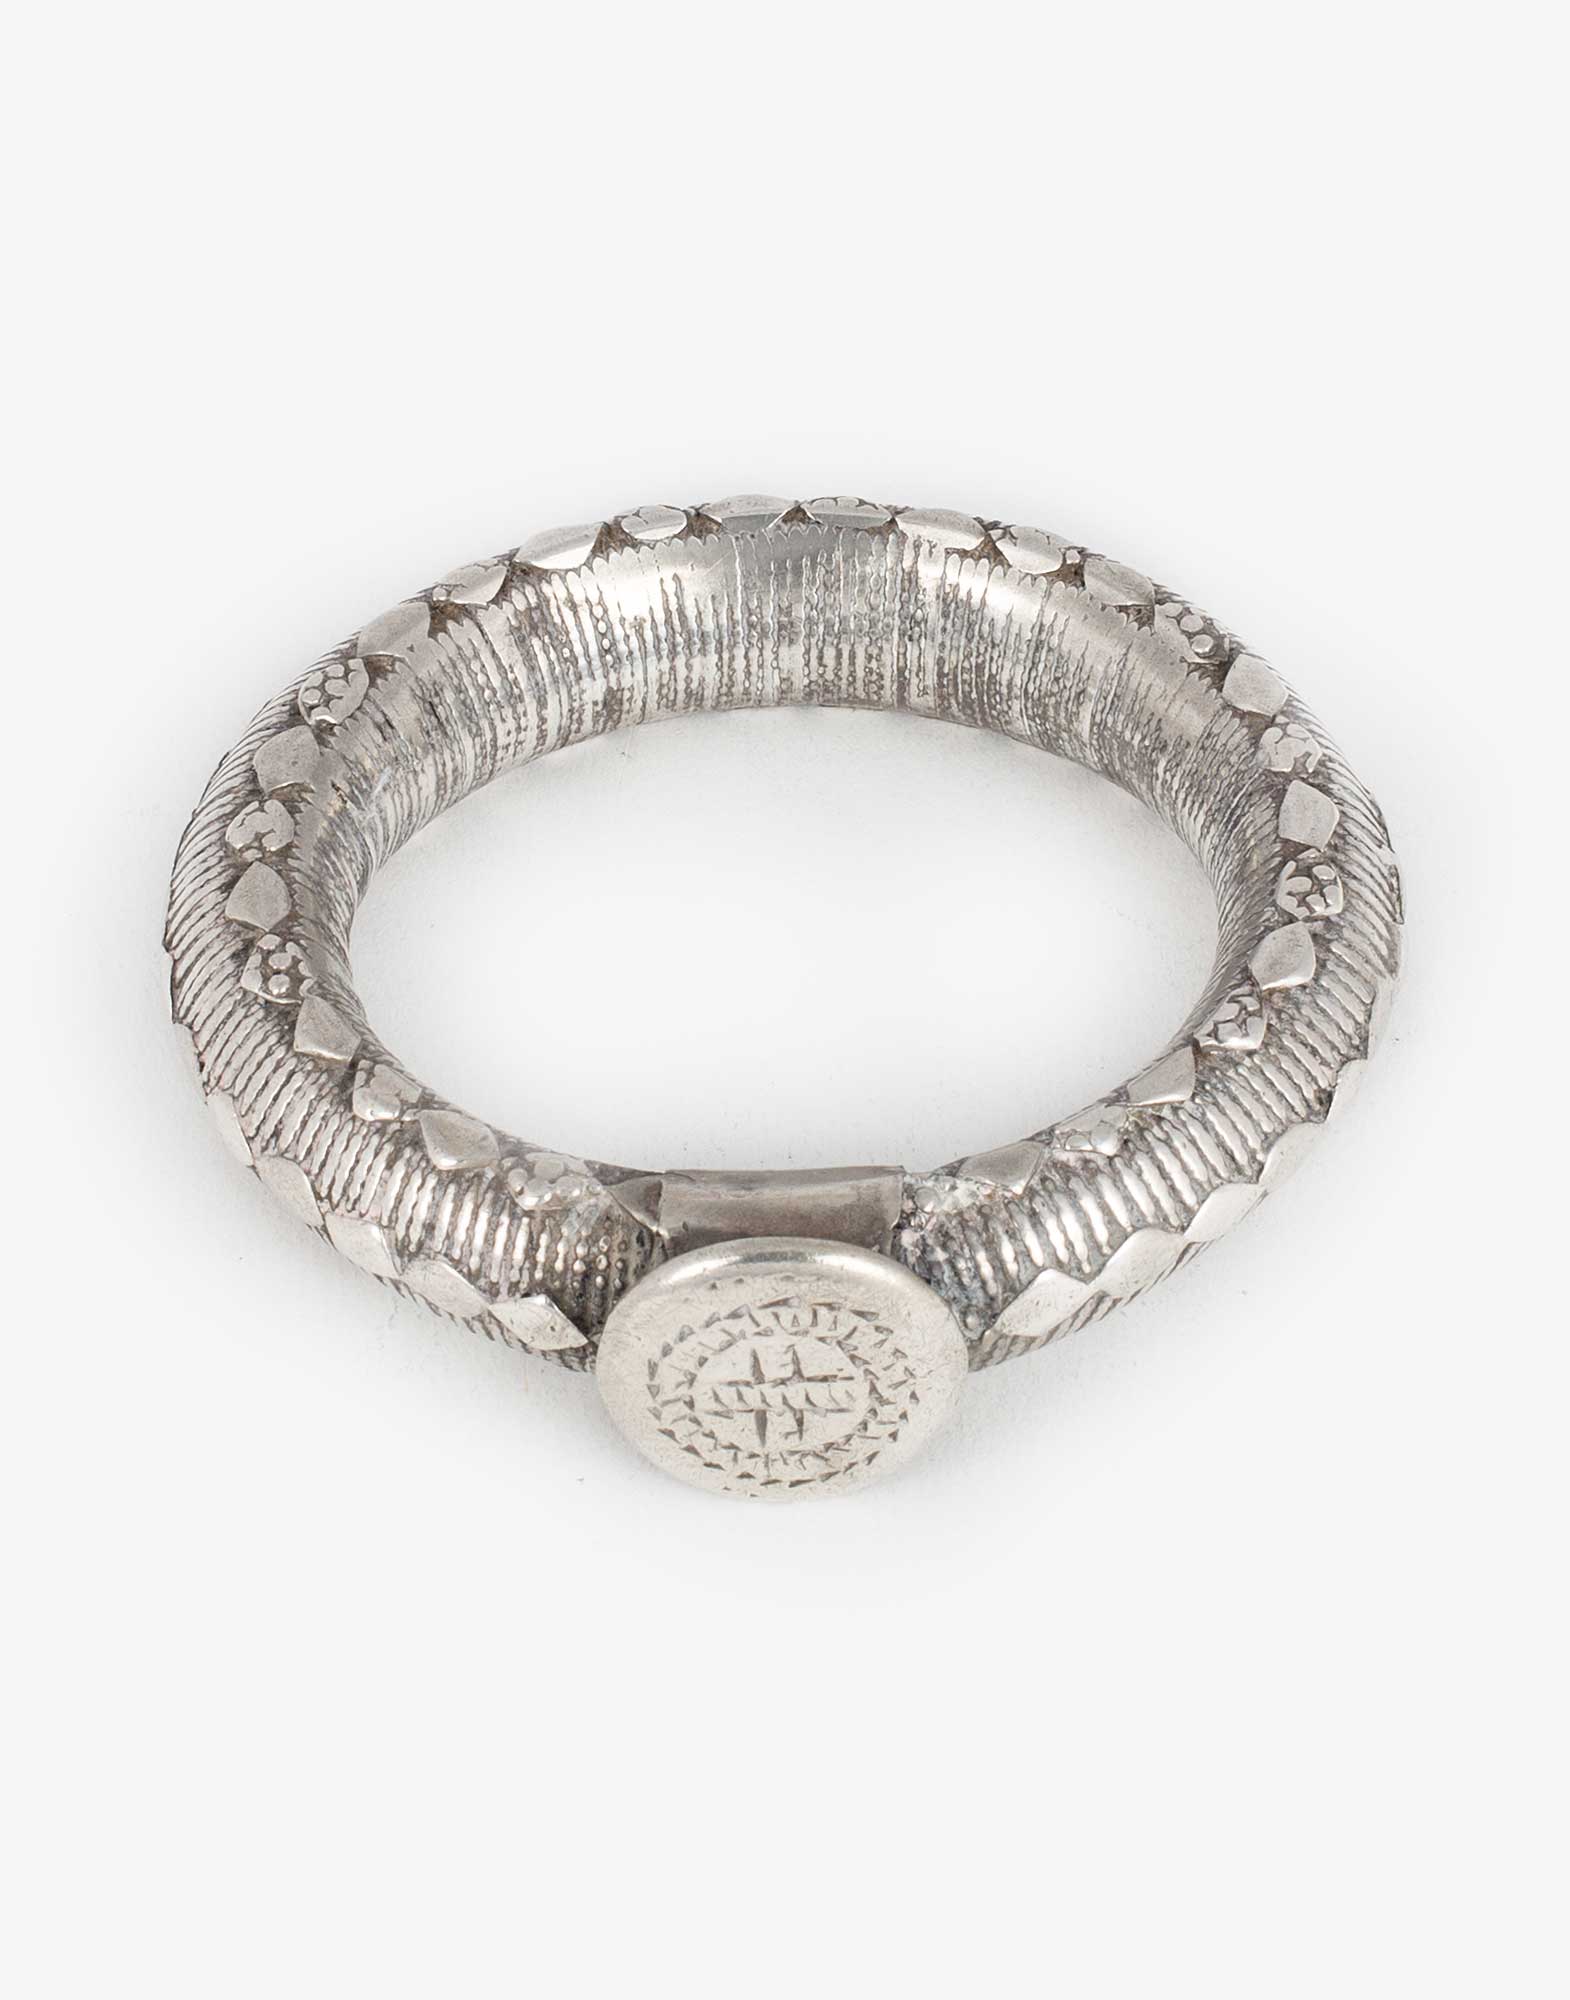 Antique Silver Rajasthani Bracelet